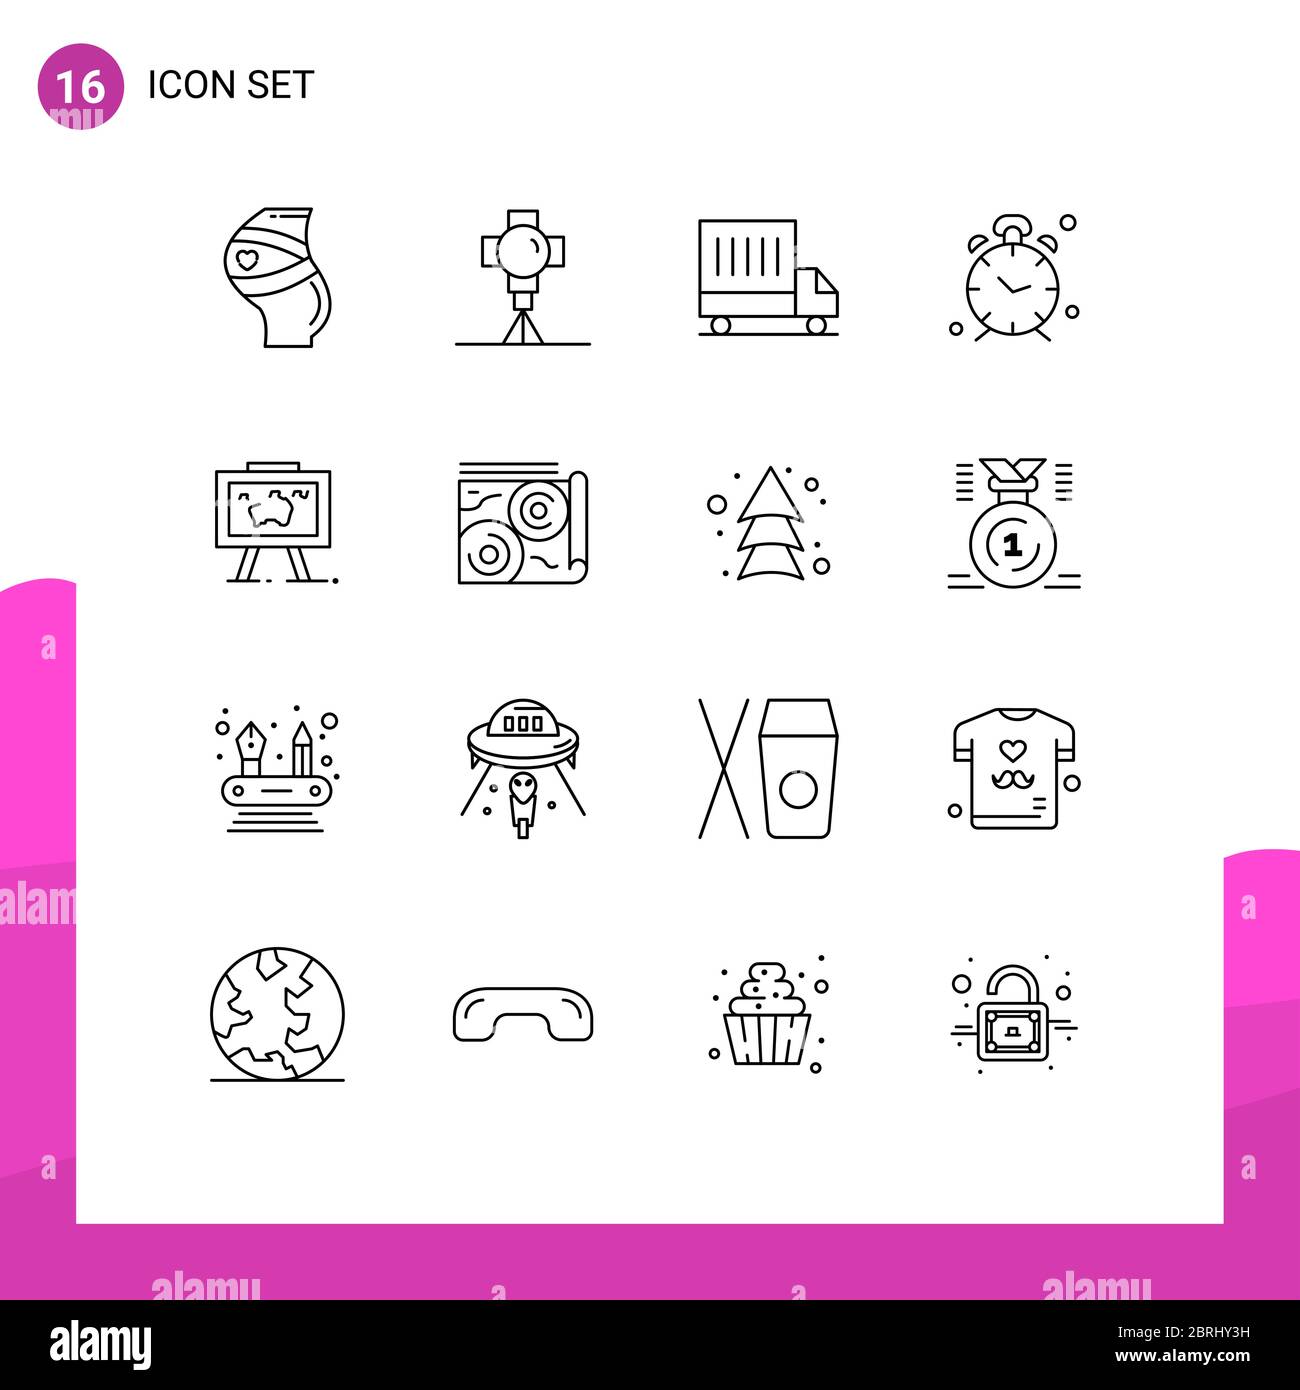 Set di 16 icone moderne dell'interfaccia utente simboli per avvisi, orologio, film, tempo, van Editable Vector Design Elements Illustrazione Vettoriale